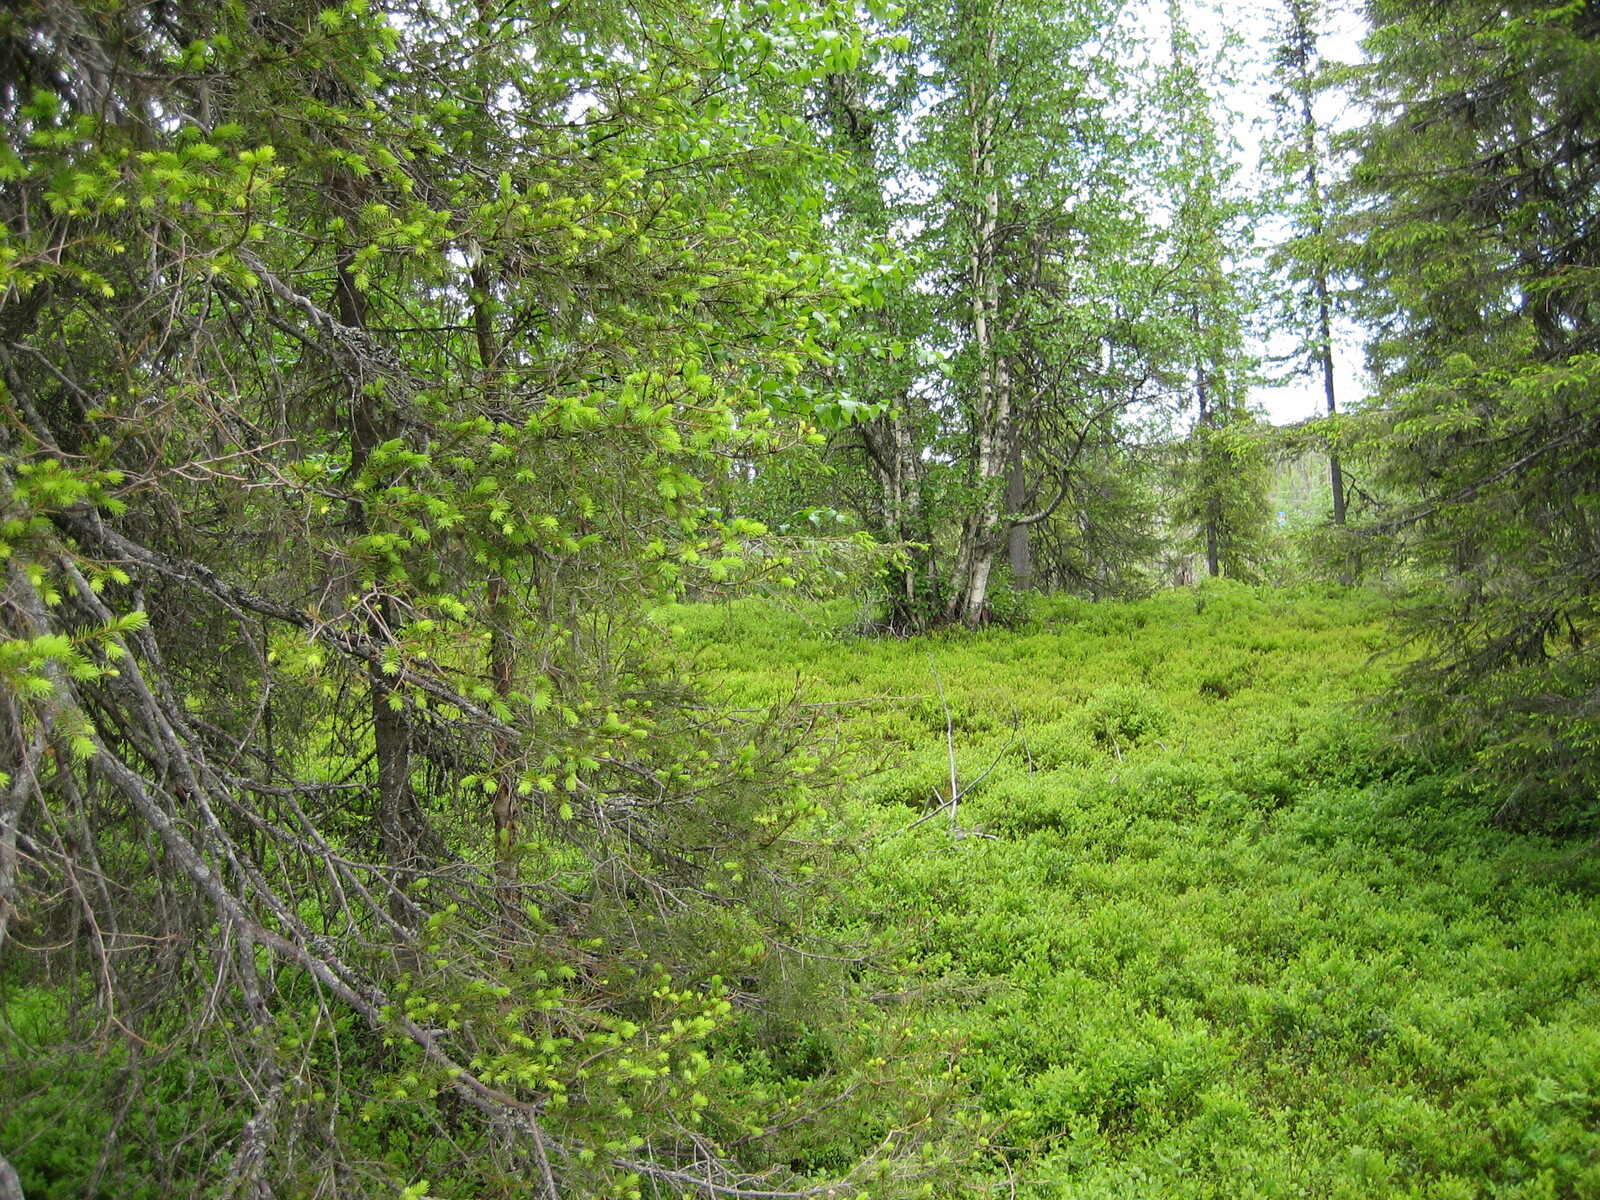 Kuusivaltaisessa metsässä kasvaa myös koivuja. Kuusissa on nuoria versoja eli kuusenkerkkiä.